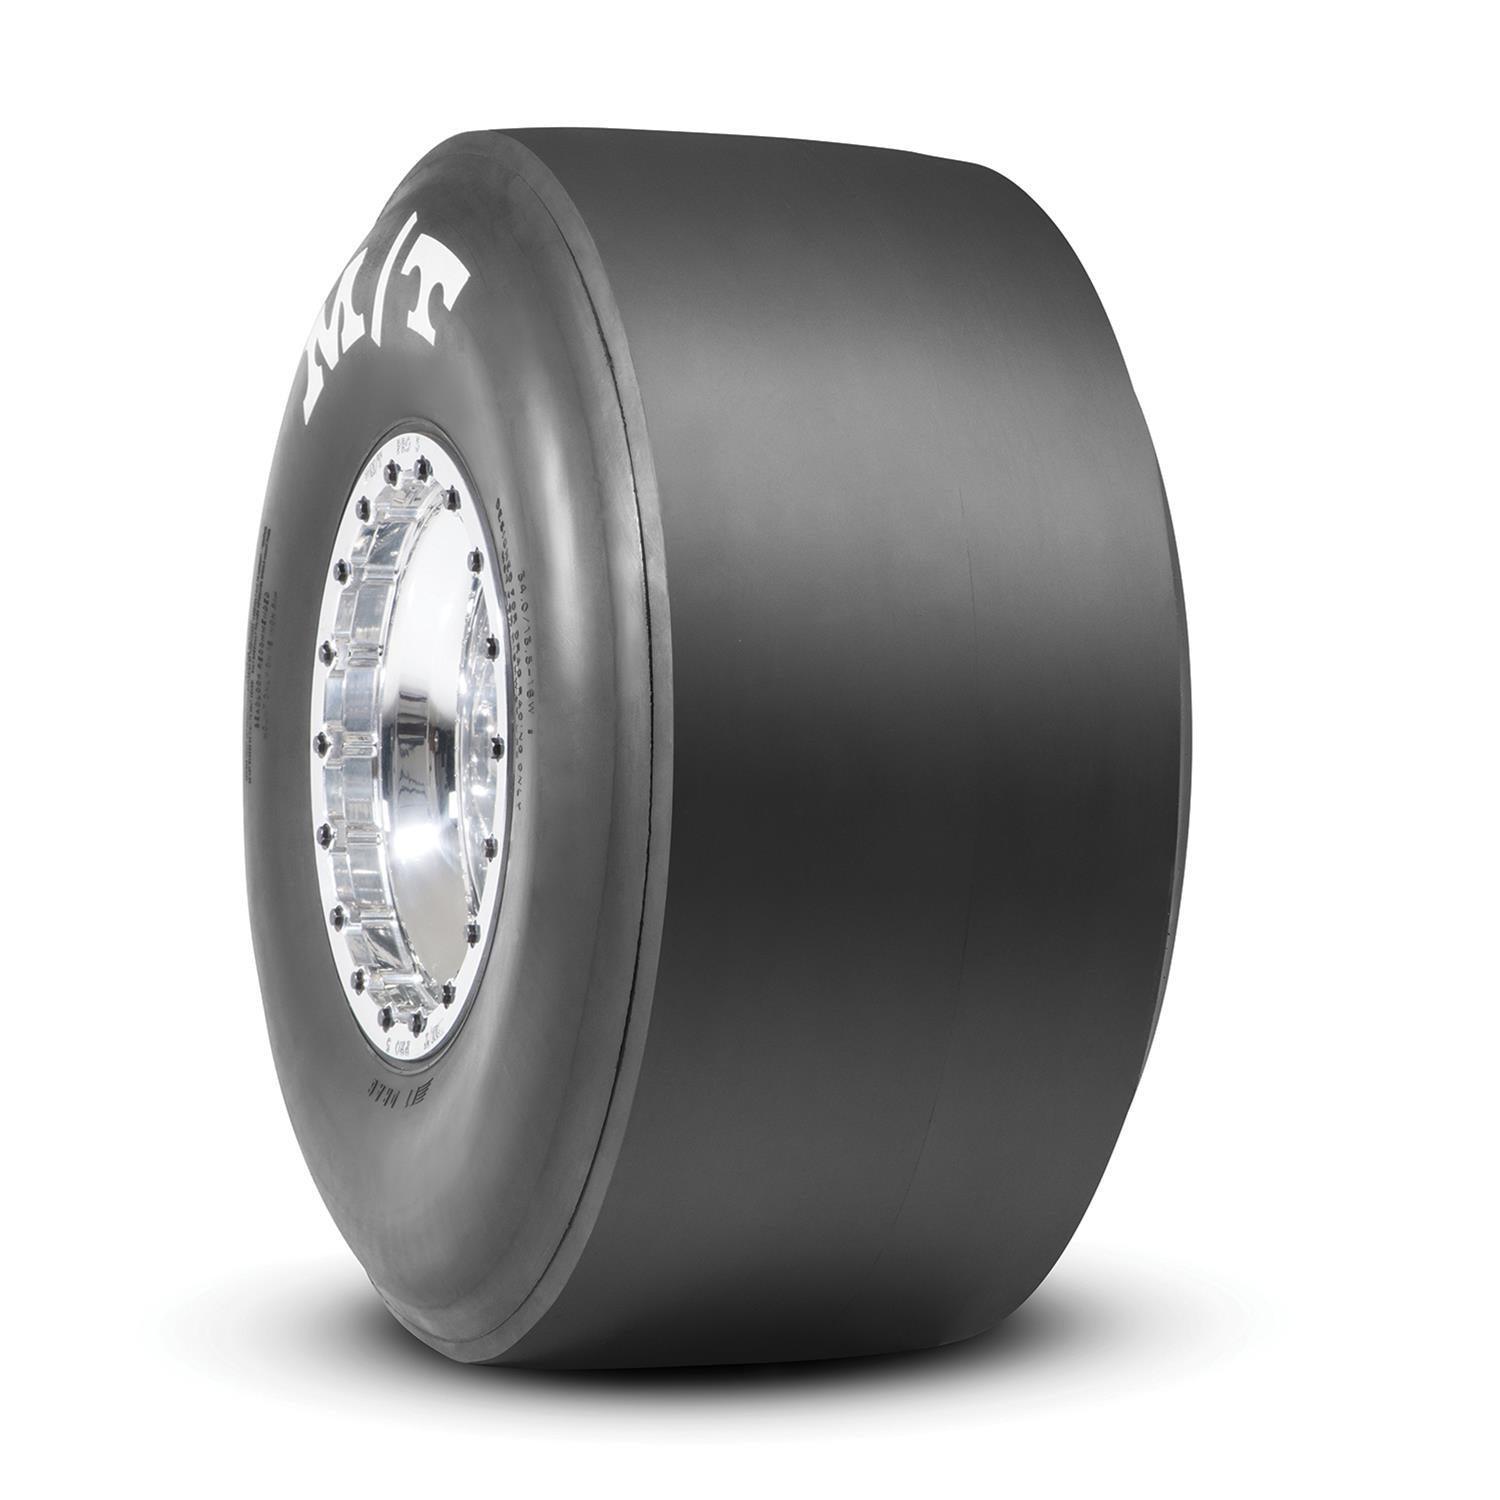 26.0/10.0-15 ET Drag Tire - Burlile Performance Products